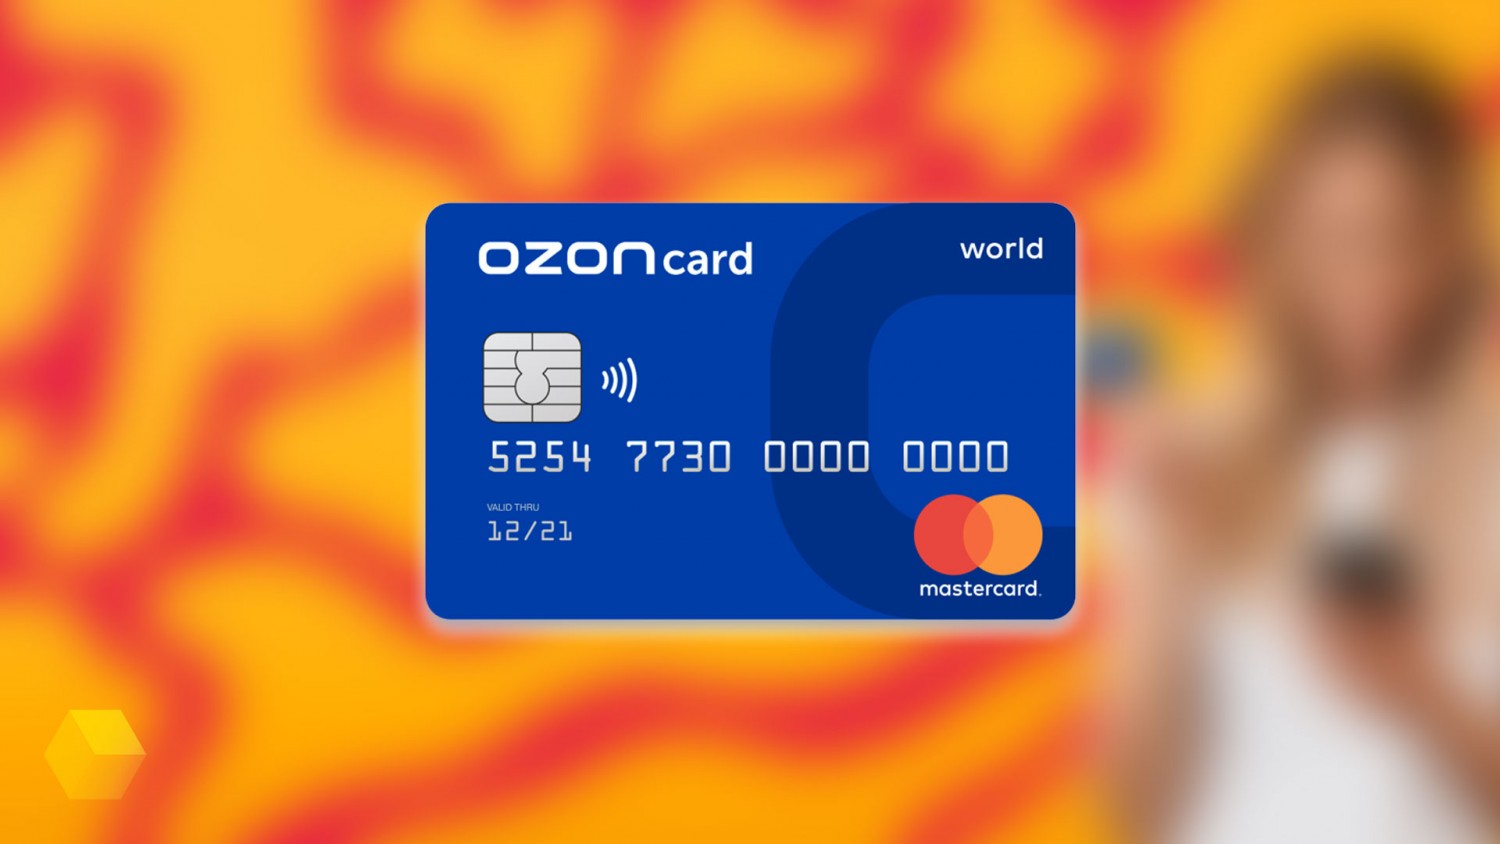 Ozon представил банковскую карту с кэшбэком и бесплатным обсуживанием